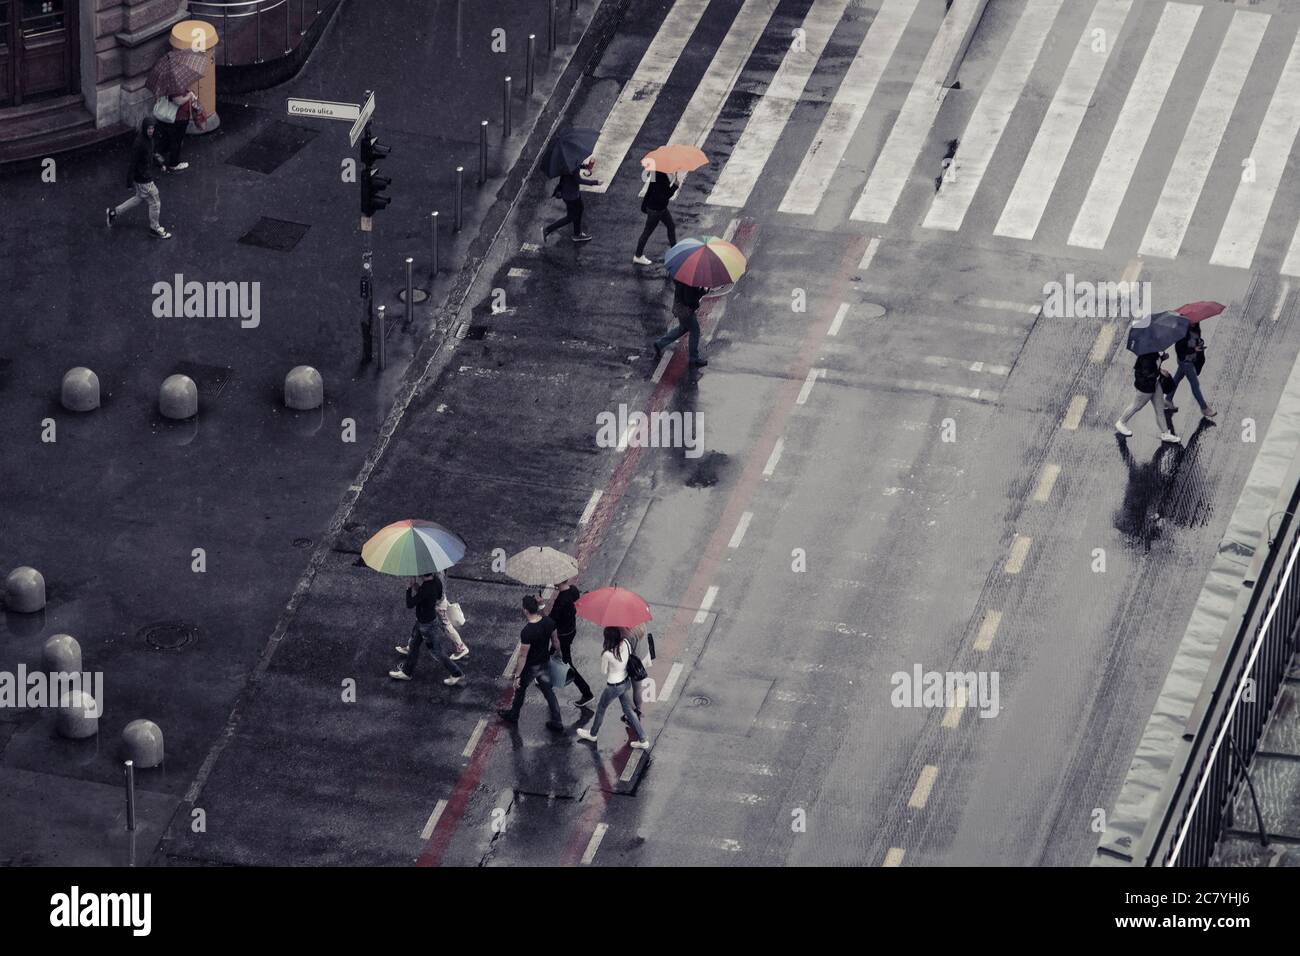 Draufsicht auf eine regnerisch-nasse Straße mit Kreuzwalken und Fußgängern mit bunten, offenen Sonnenschirmen Stockfoto